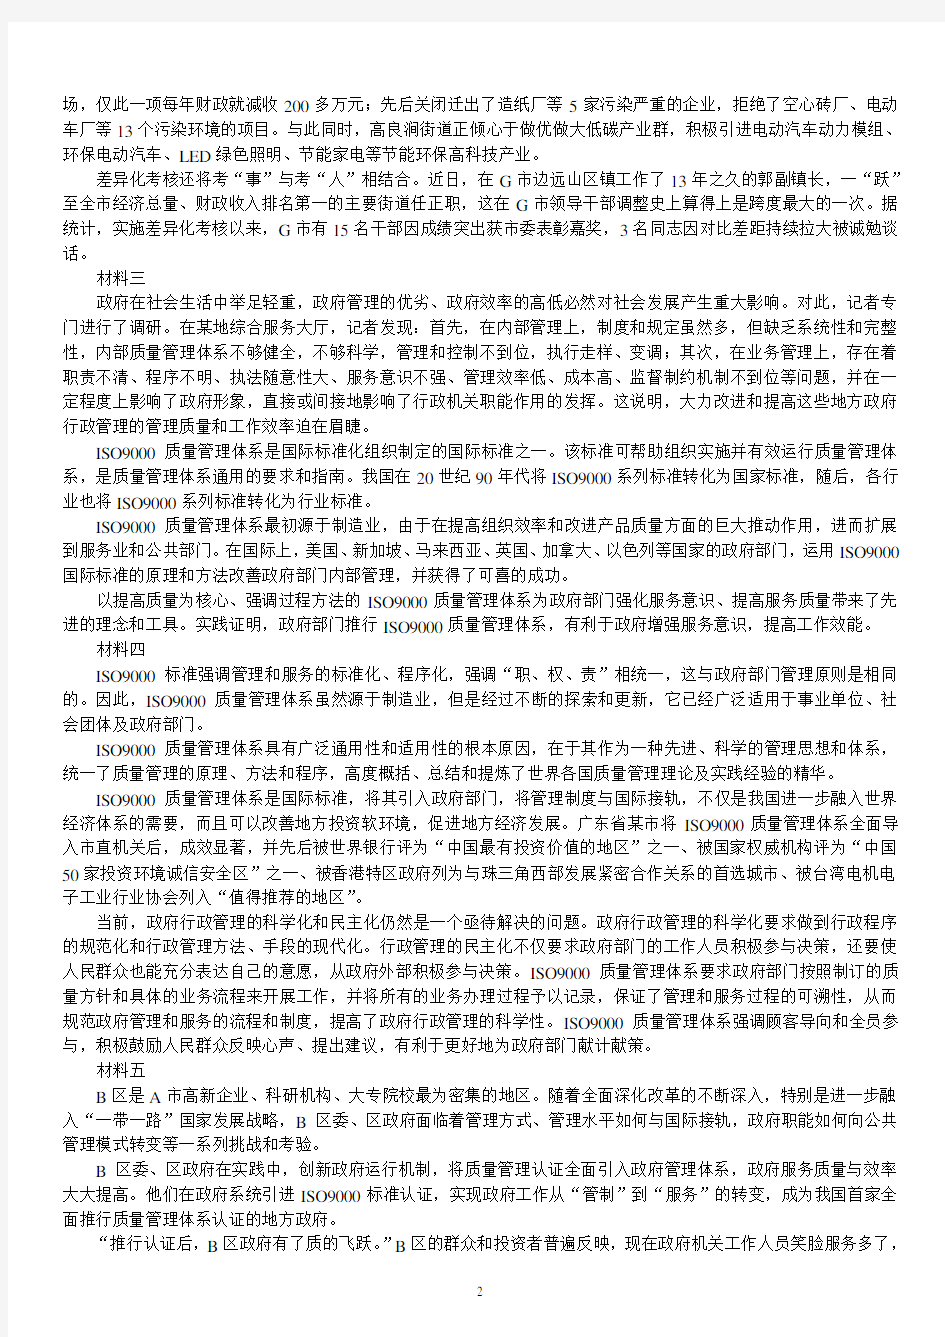 2018年黑龙江省公务员录用考试《申论》(B类)真题(公检法)及标准答案